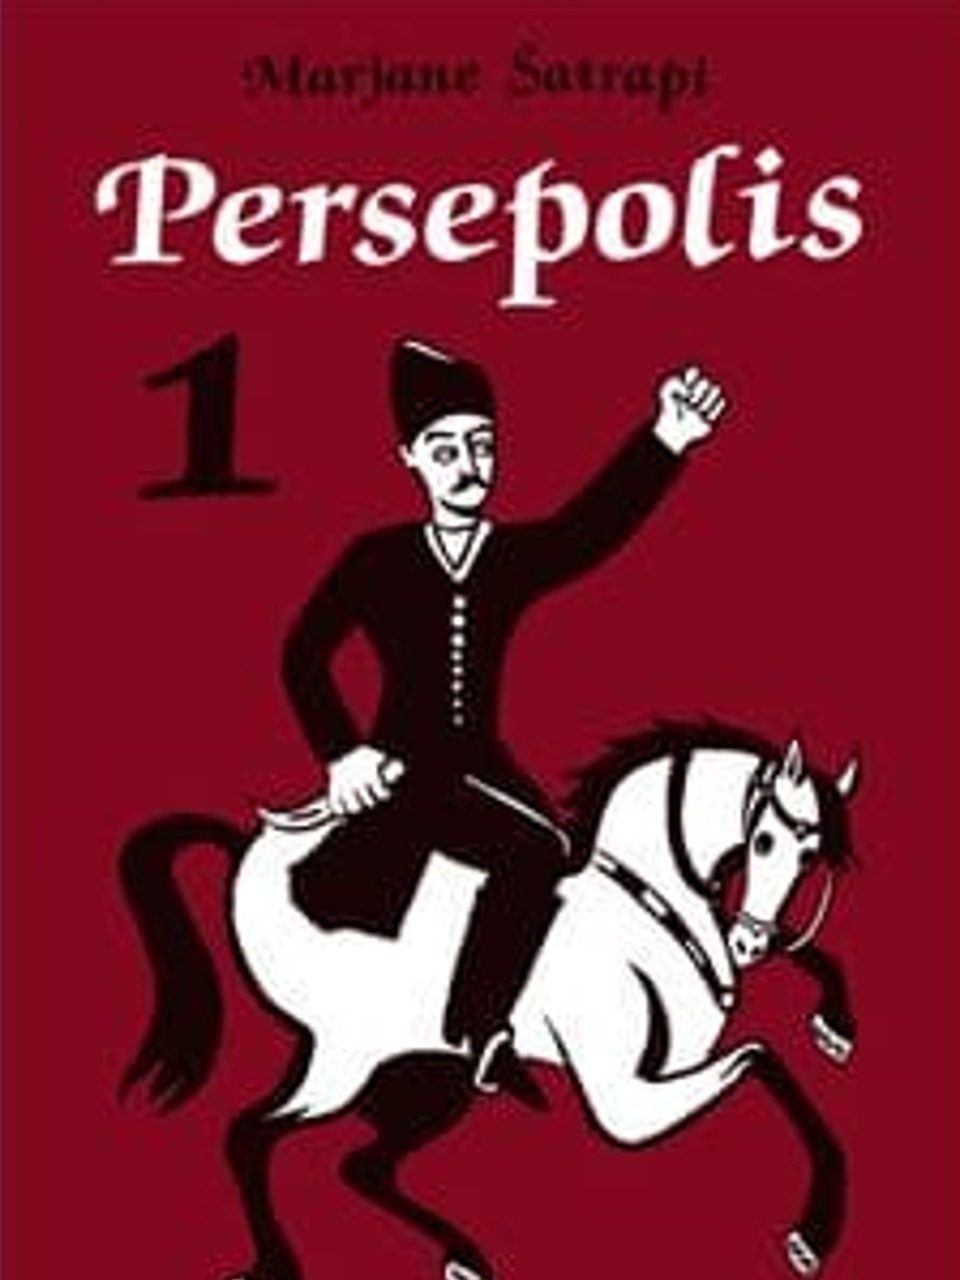 Couverture du roman graphique Perspépolis de Marjane Satrapi, éd. L'Association